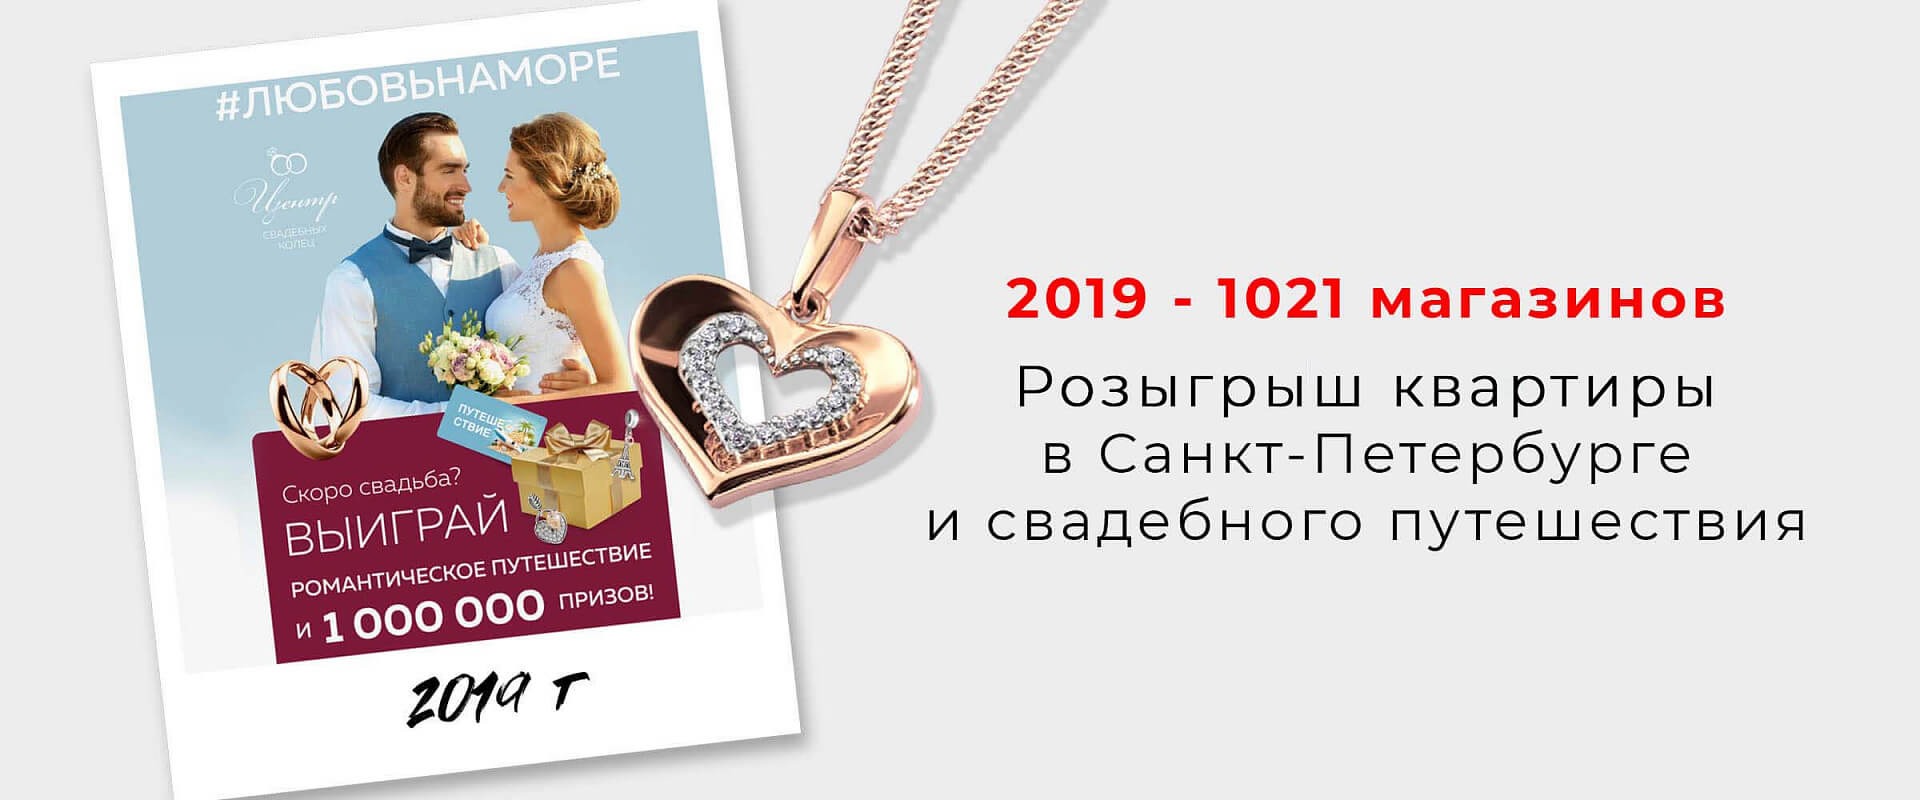 2019 - 1021 магазинов